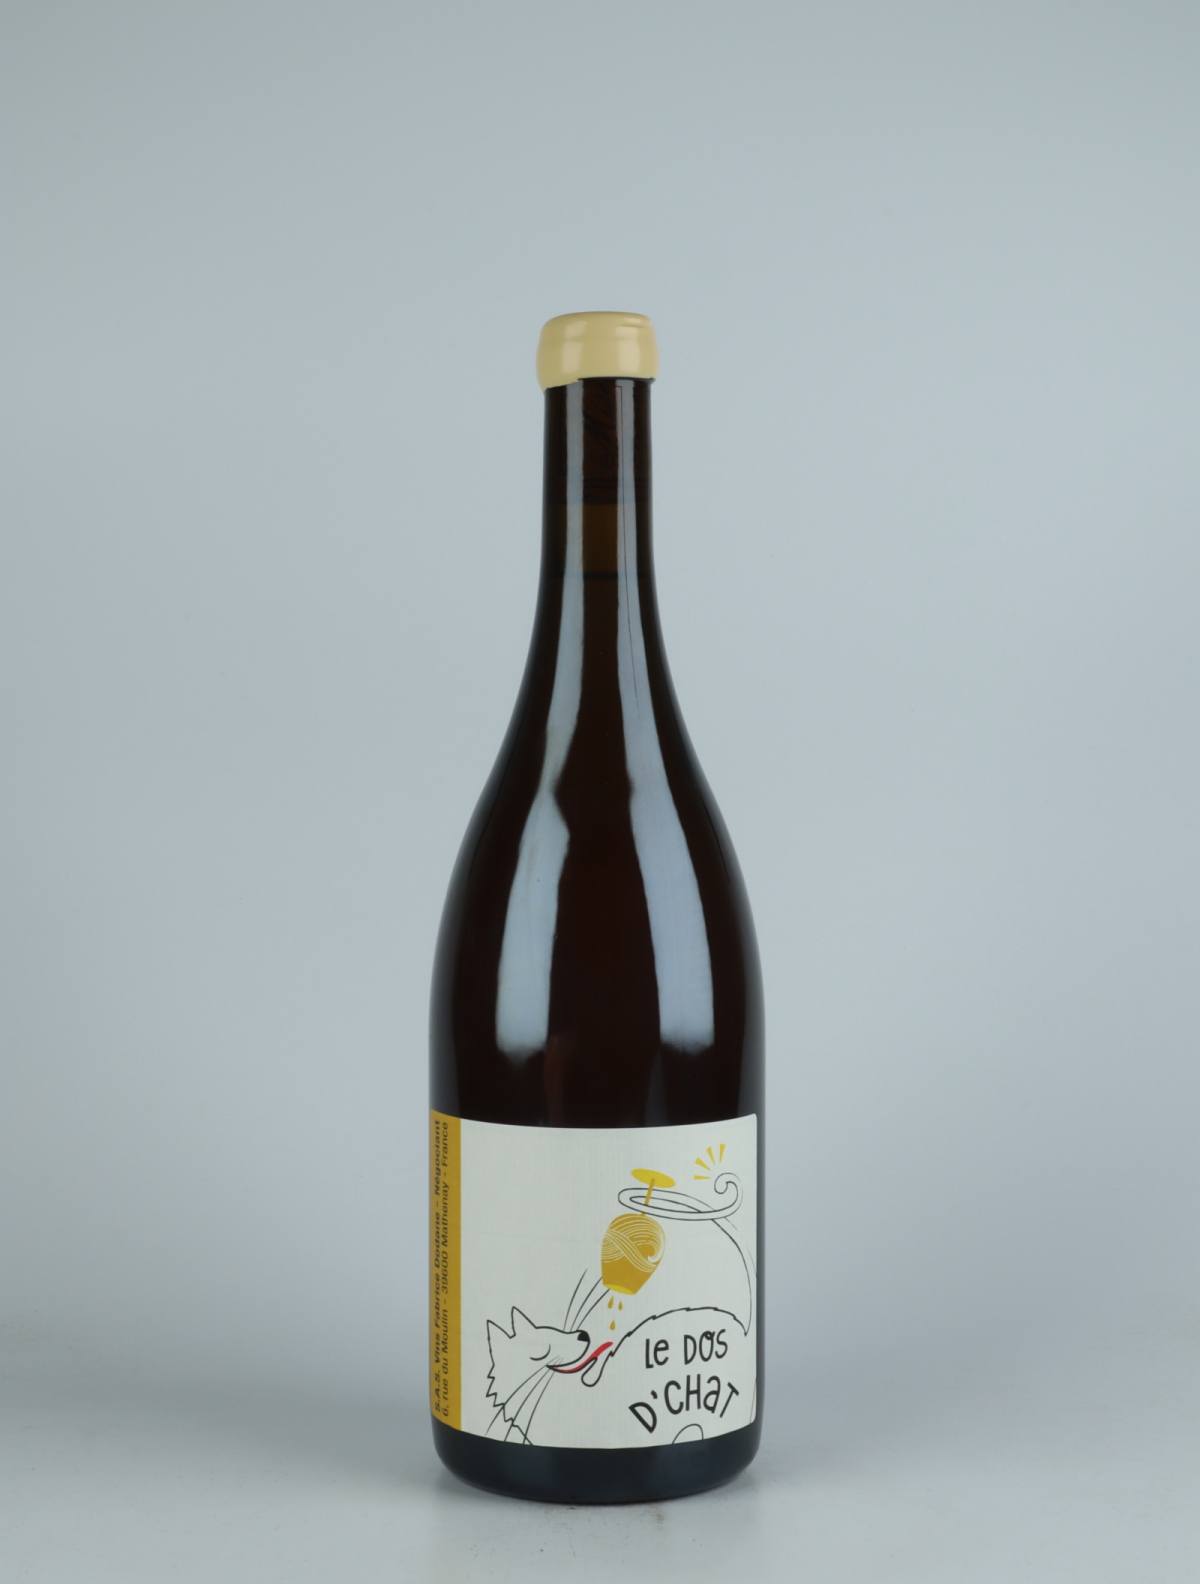 En flaske 2020 Chardonnay Les Corvées Hvidvin fra Fabrice Dodane, Jura i Frankrig